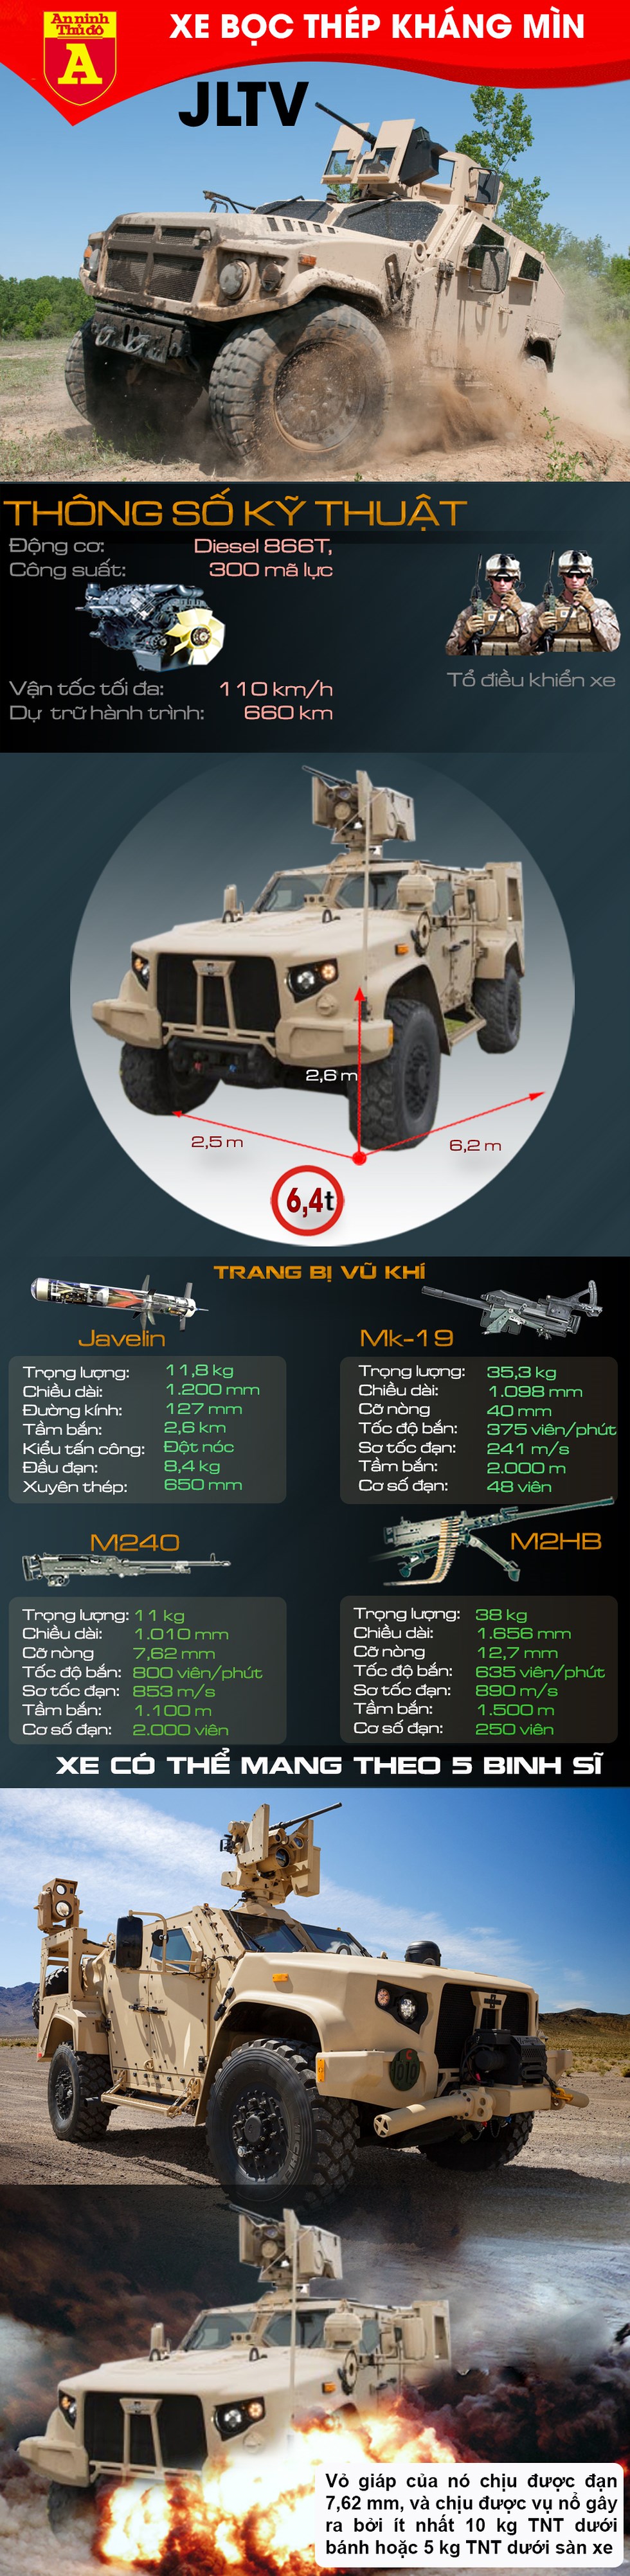 [Infographics] Mỹ lắp ‘sát thủ’ Javelin lên hậu duệ Humvee khiến đối thủ kinh hãi trên chiến trường - Ảnh 1